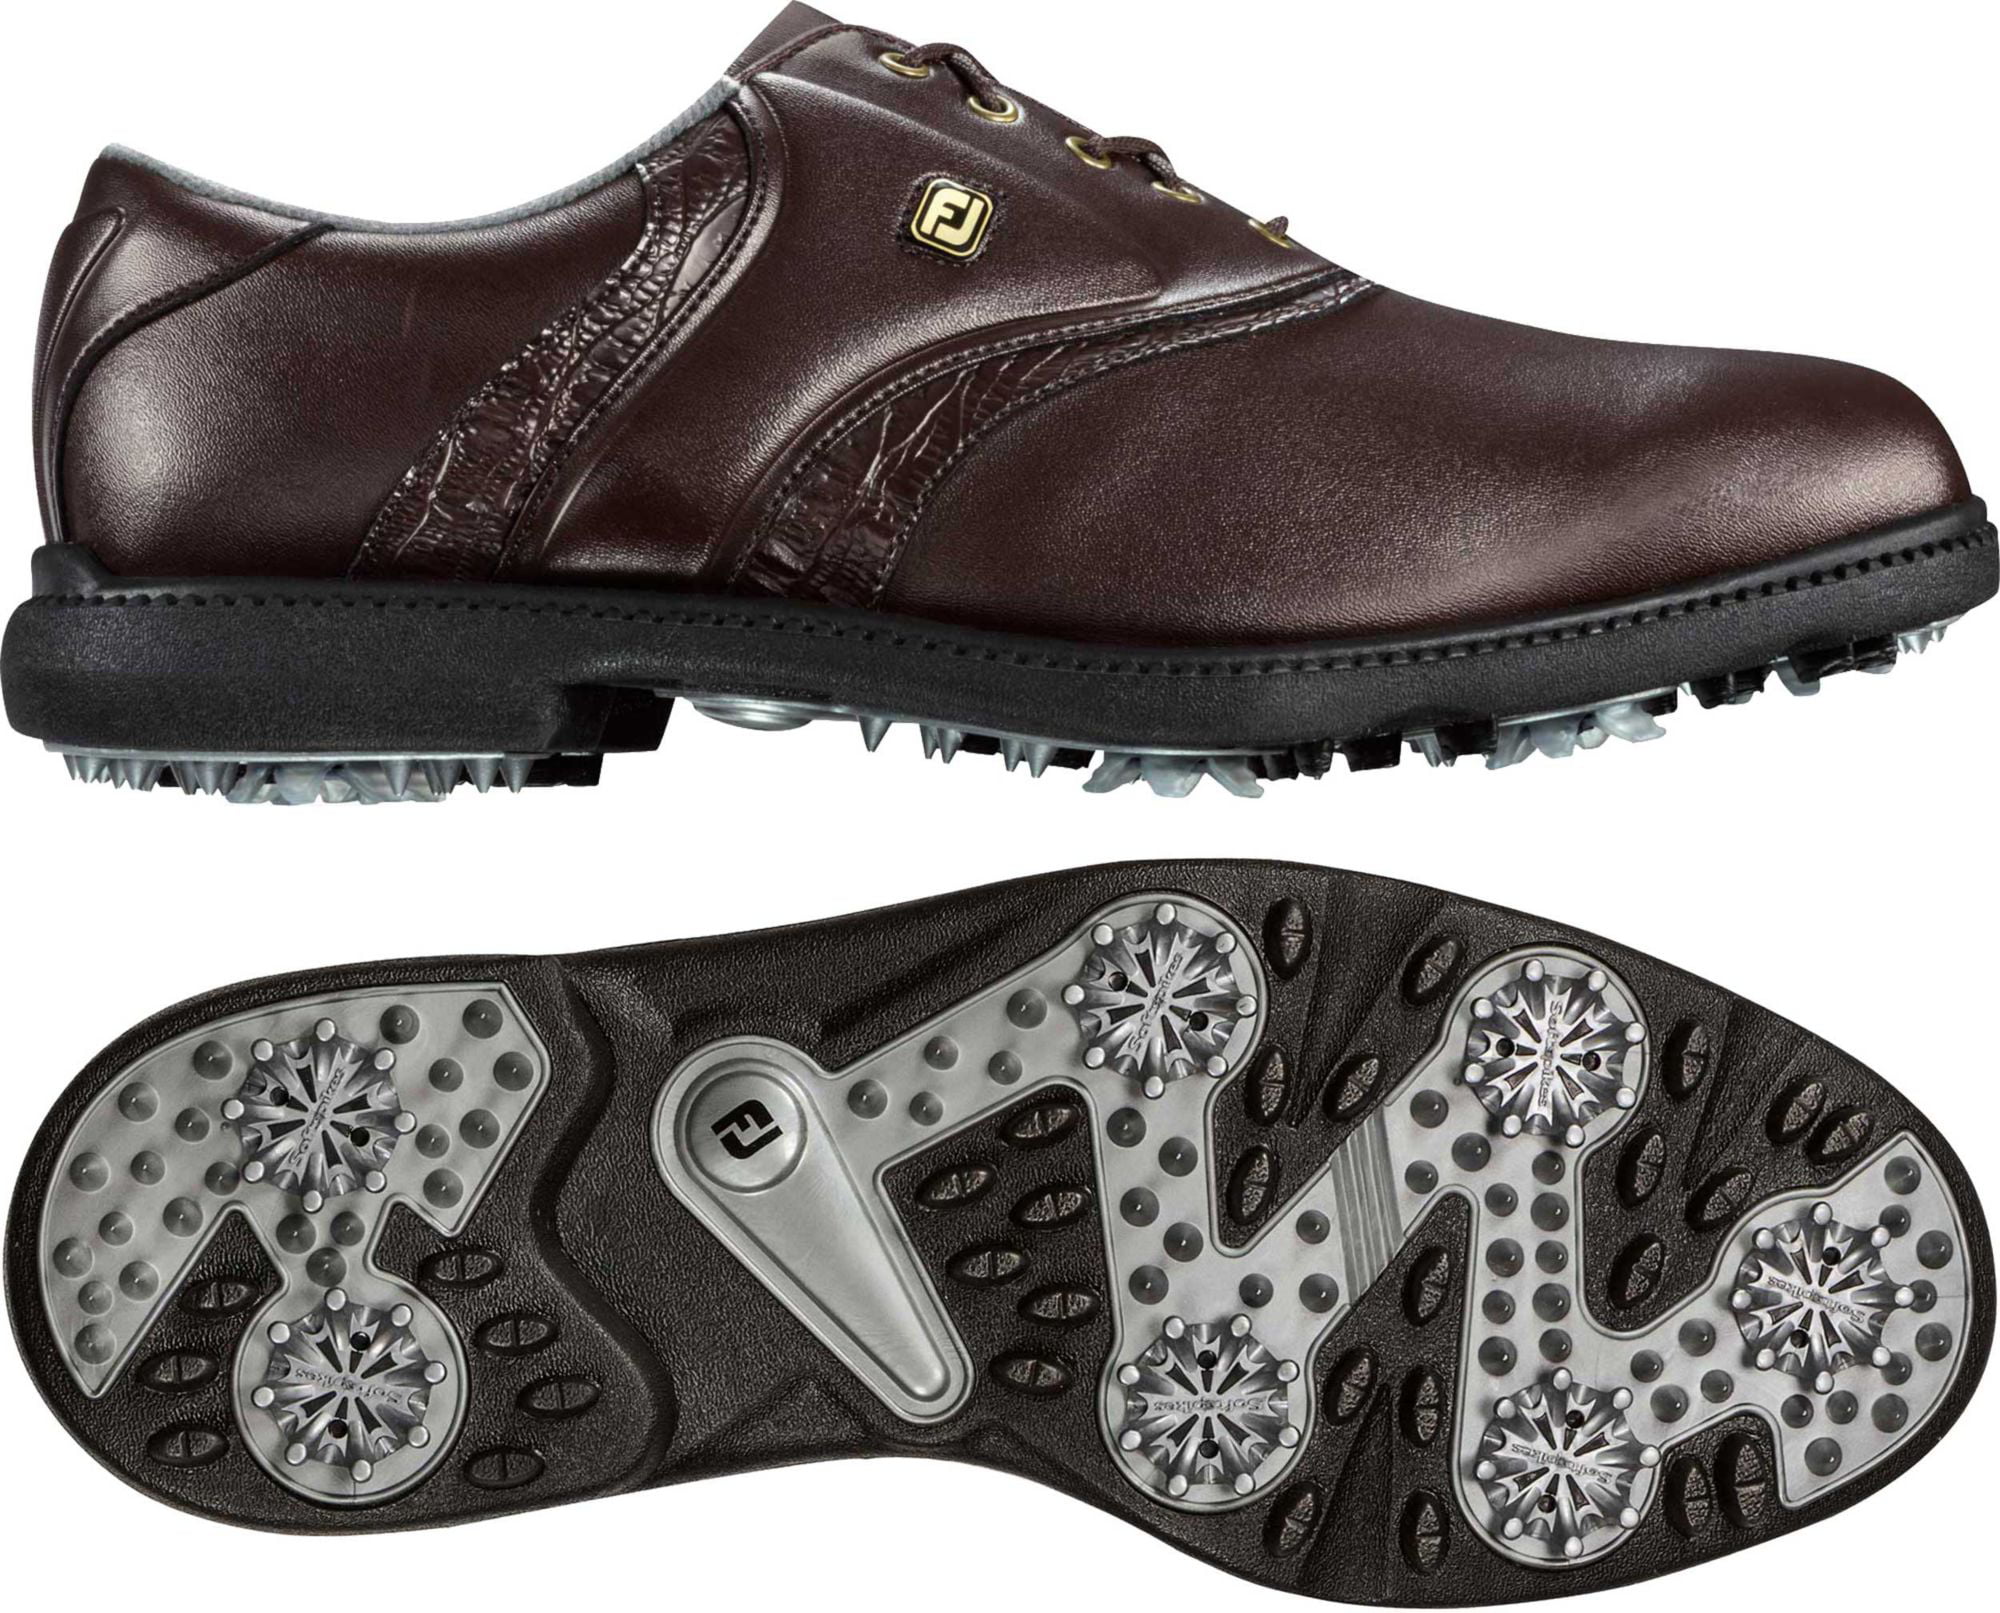 FootJoy Men's FJ Originals Golf Shoes - Walmart.com - Walmart.com